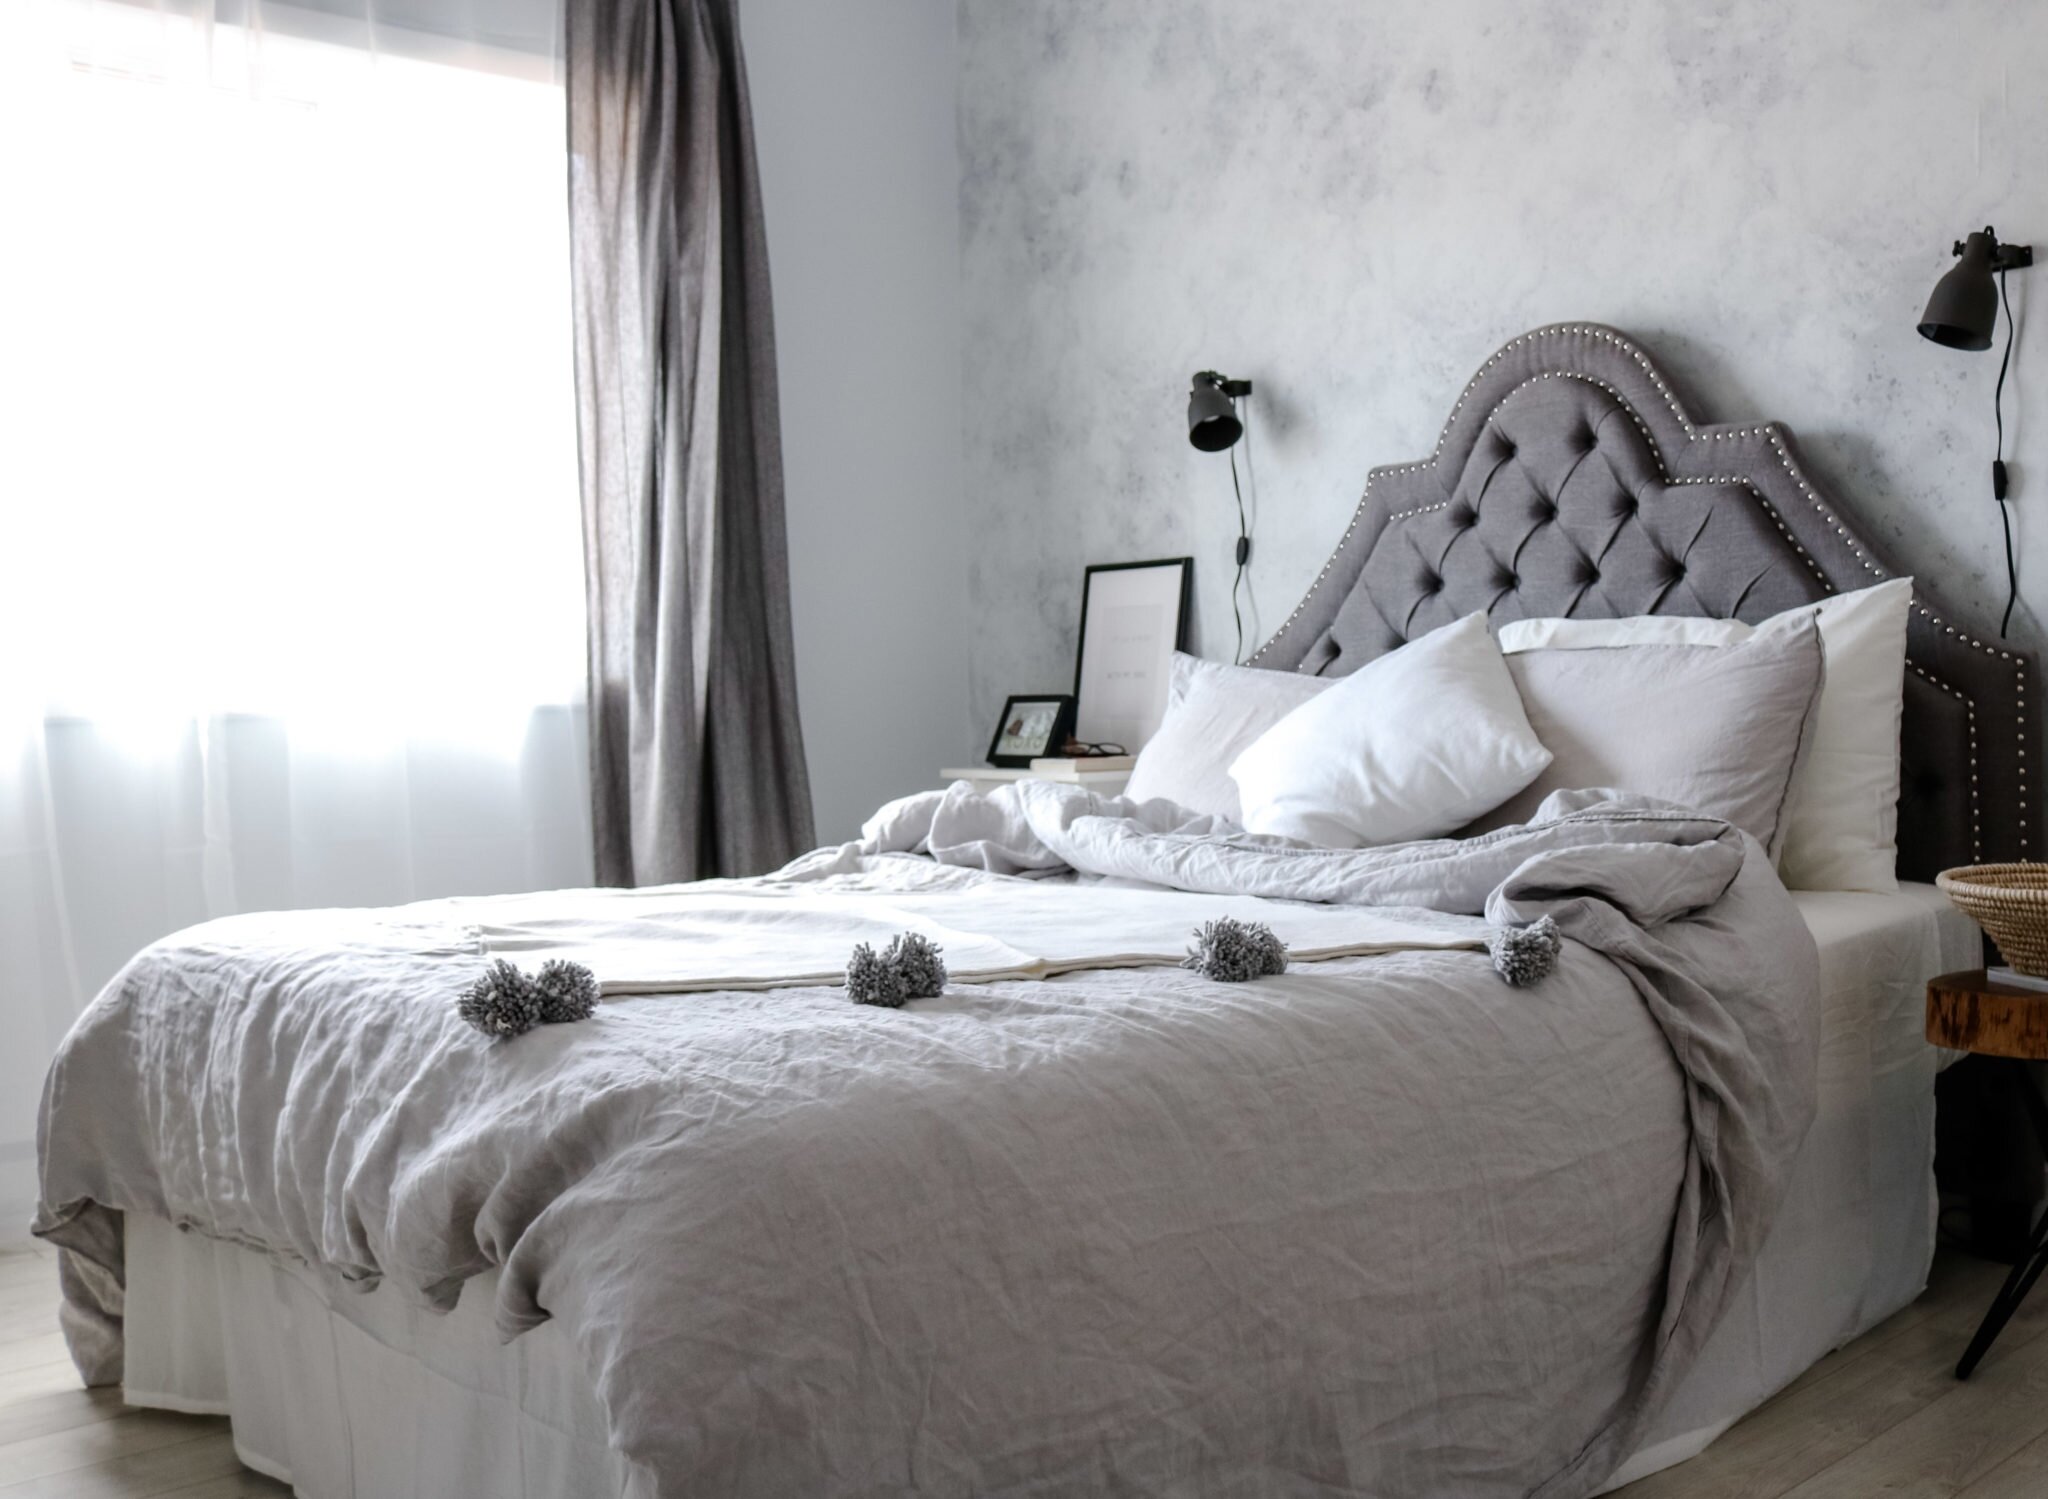 Nordic inspired bedroom